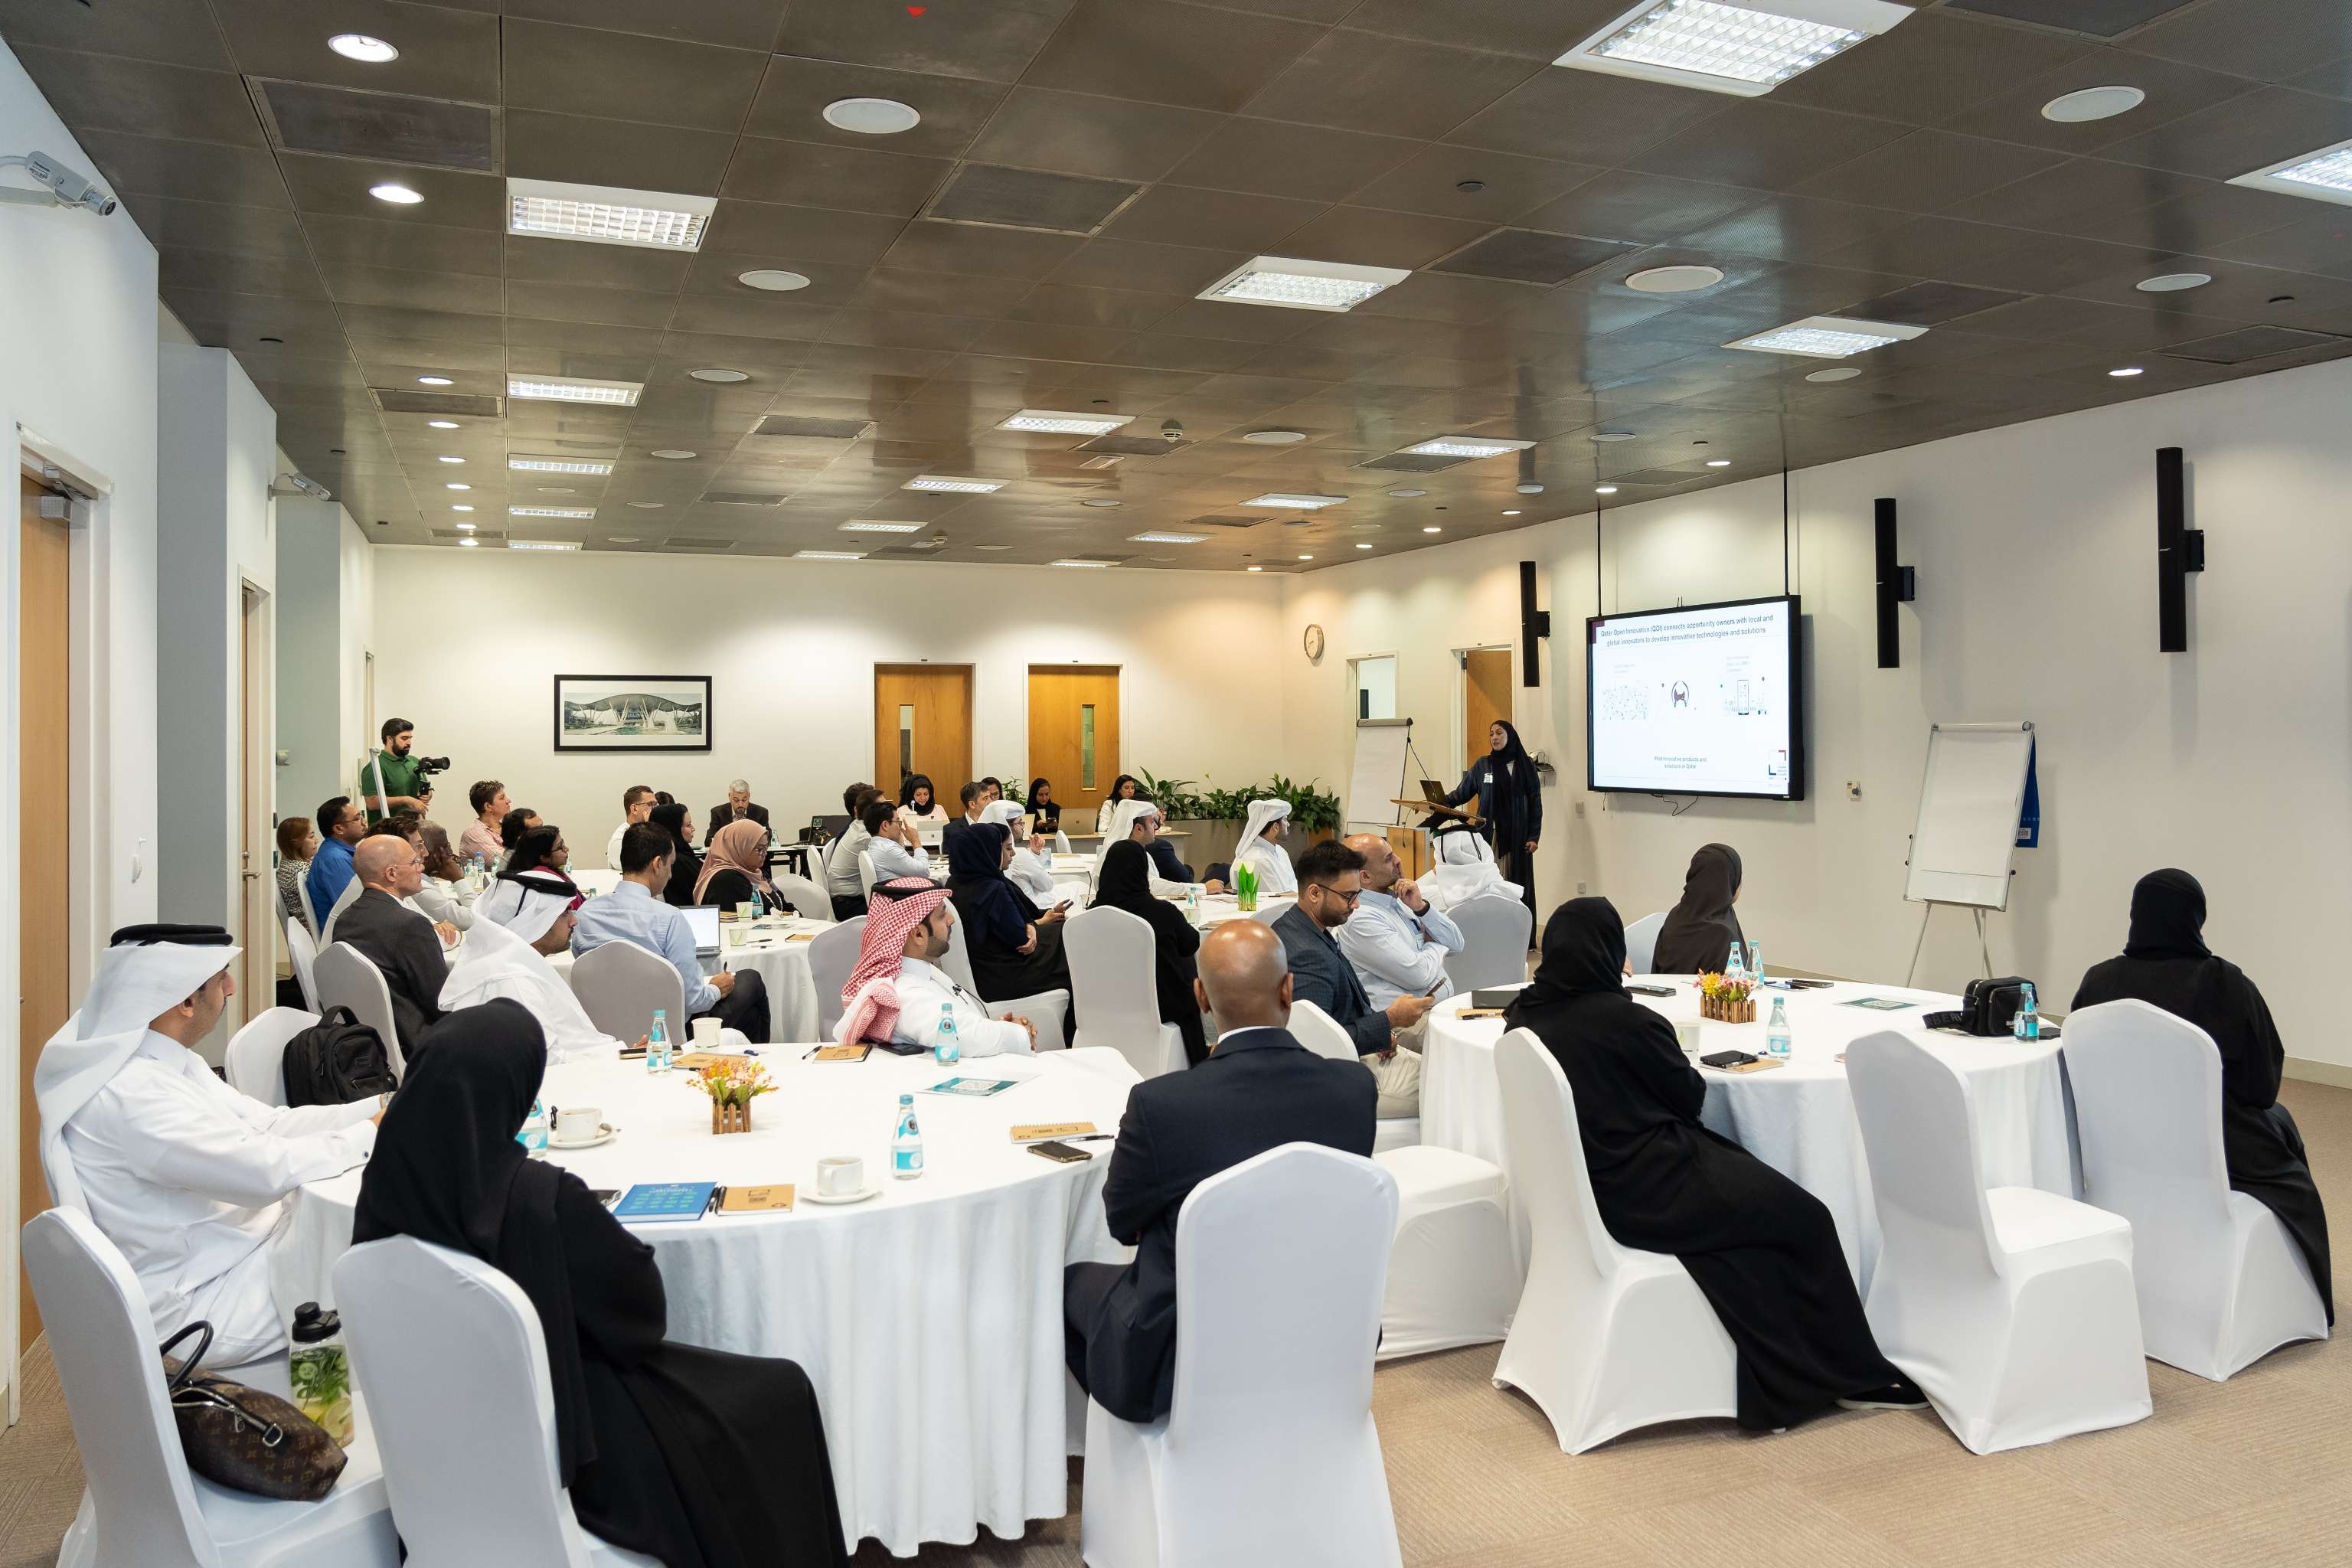 مجلس قطر للبحوث والتطوير والابتكار برنامج قادة الابتكار المؤسسي ٢.jpeg